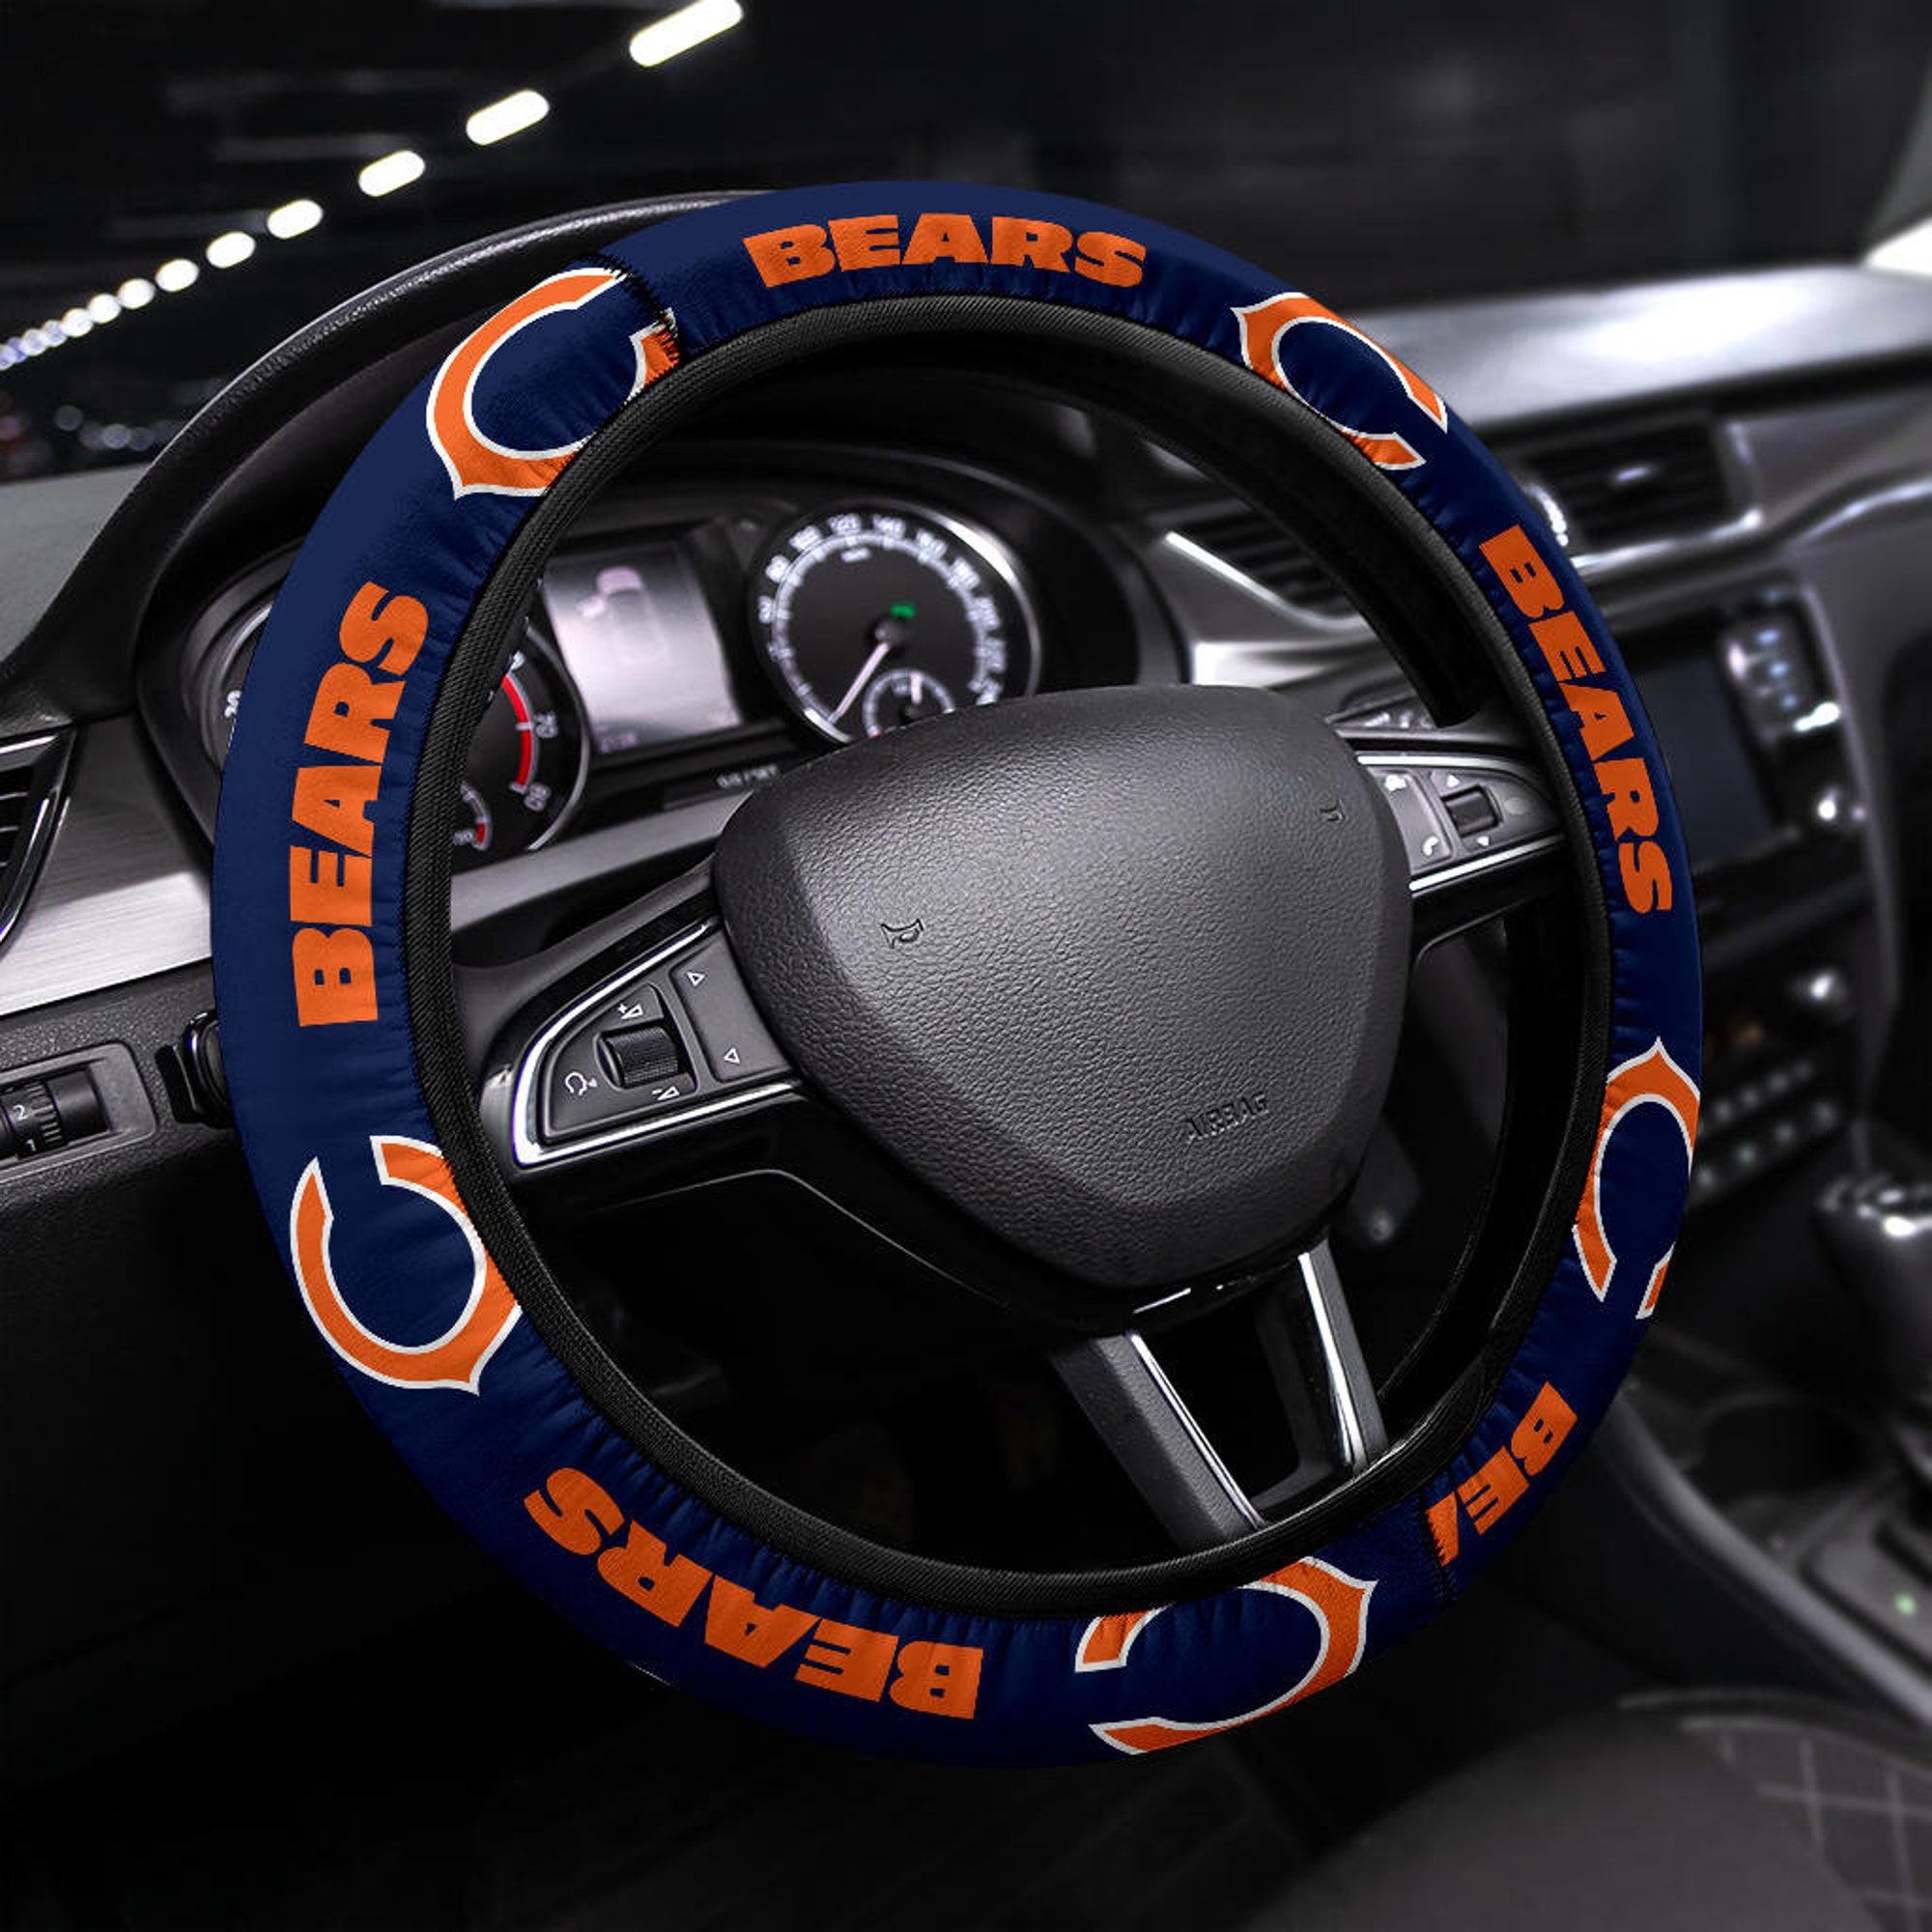 Chicago Bears themed custom steering wheel cover